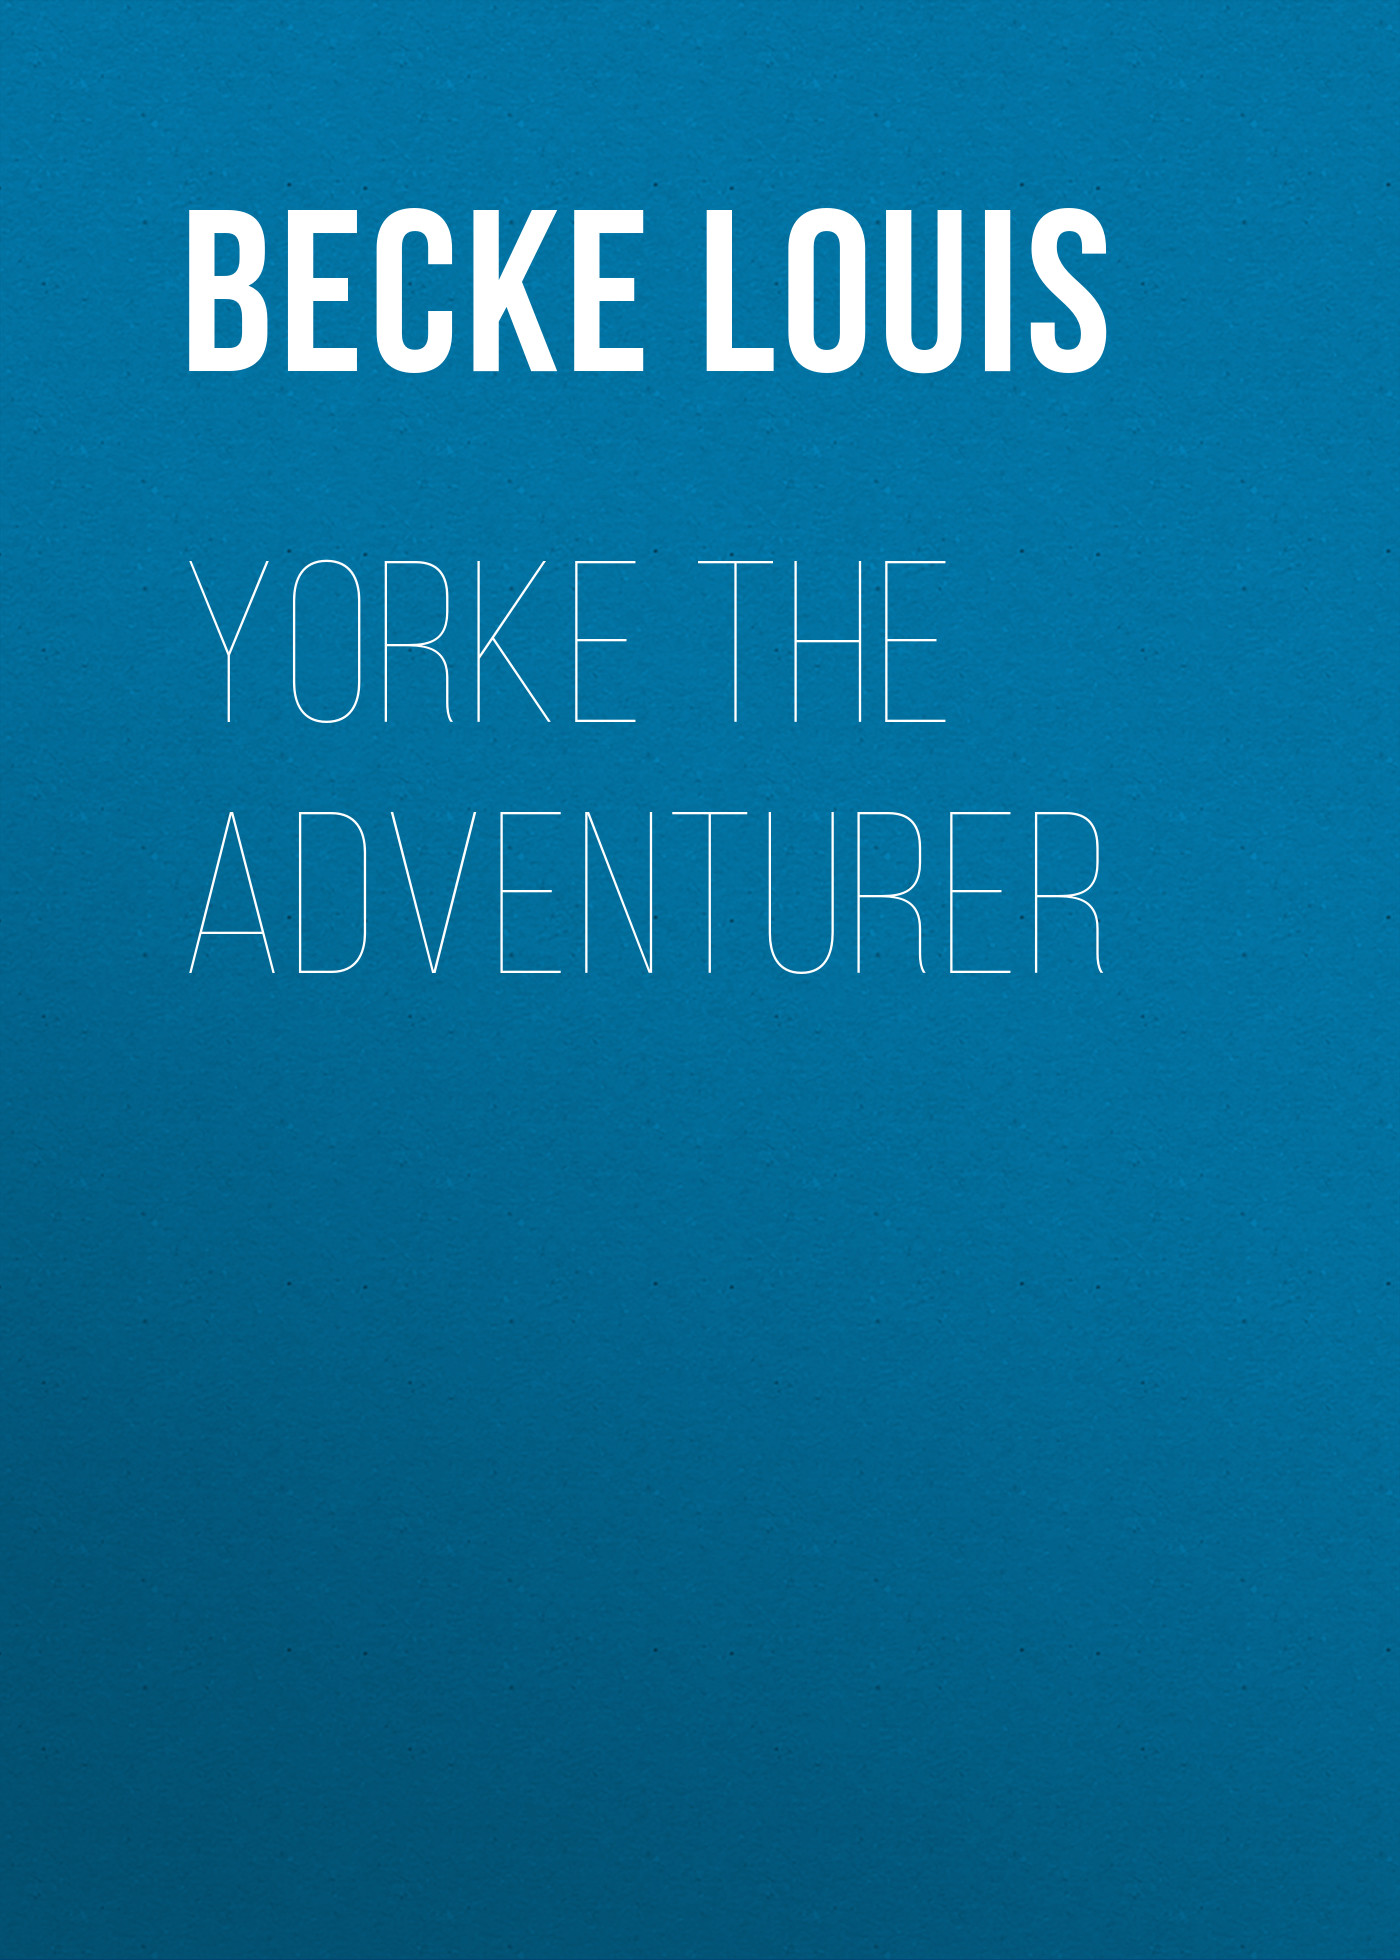 Книга Yorke The Adventurer из серии , созданная Louis Becke, может относится к жанру Зарубежная классика, Литература 19 века, Зарубежная старинная литература. Стоимость электронной книги Yorke The Adventurer с идентификатором 36366958 составляет 0 руб.